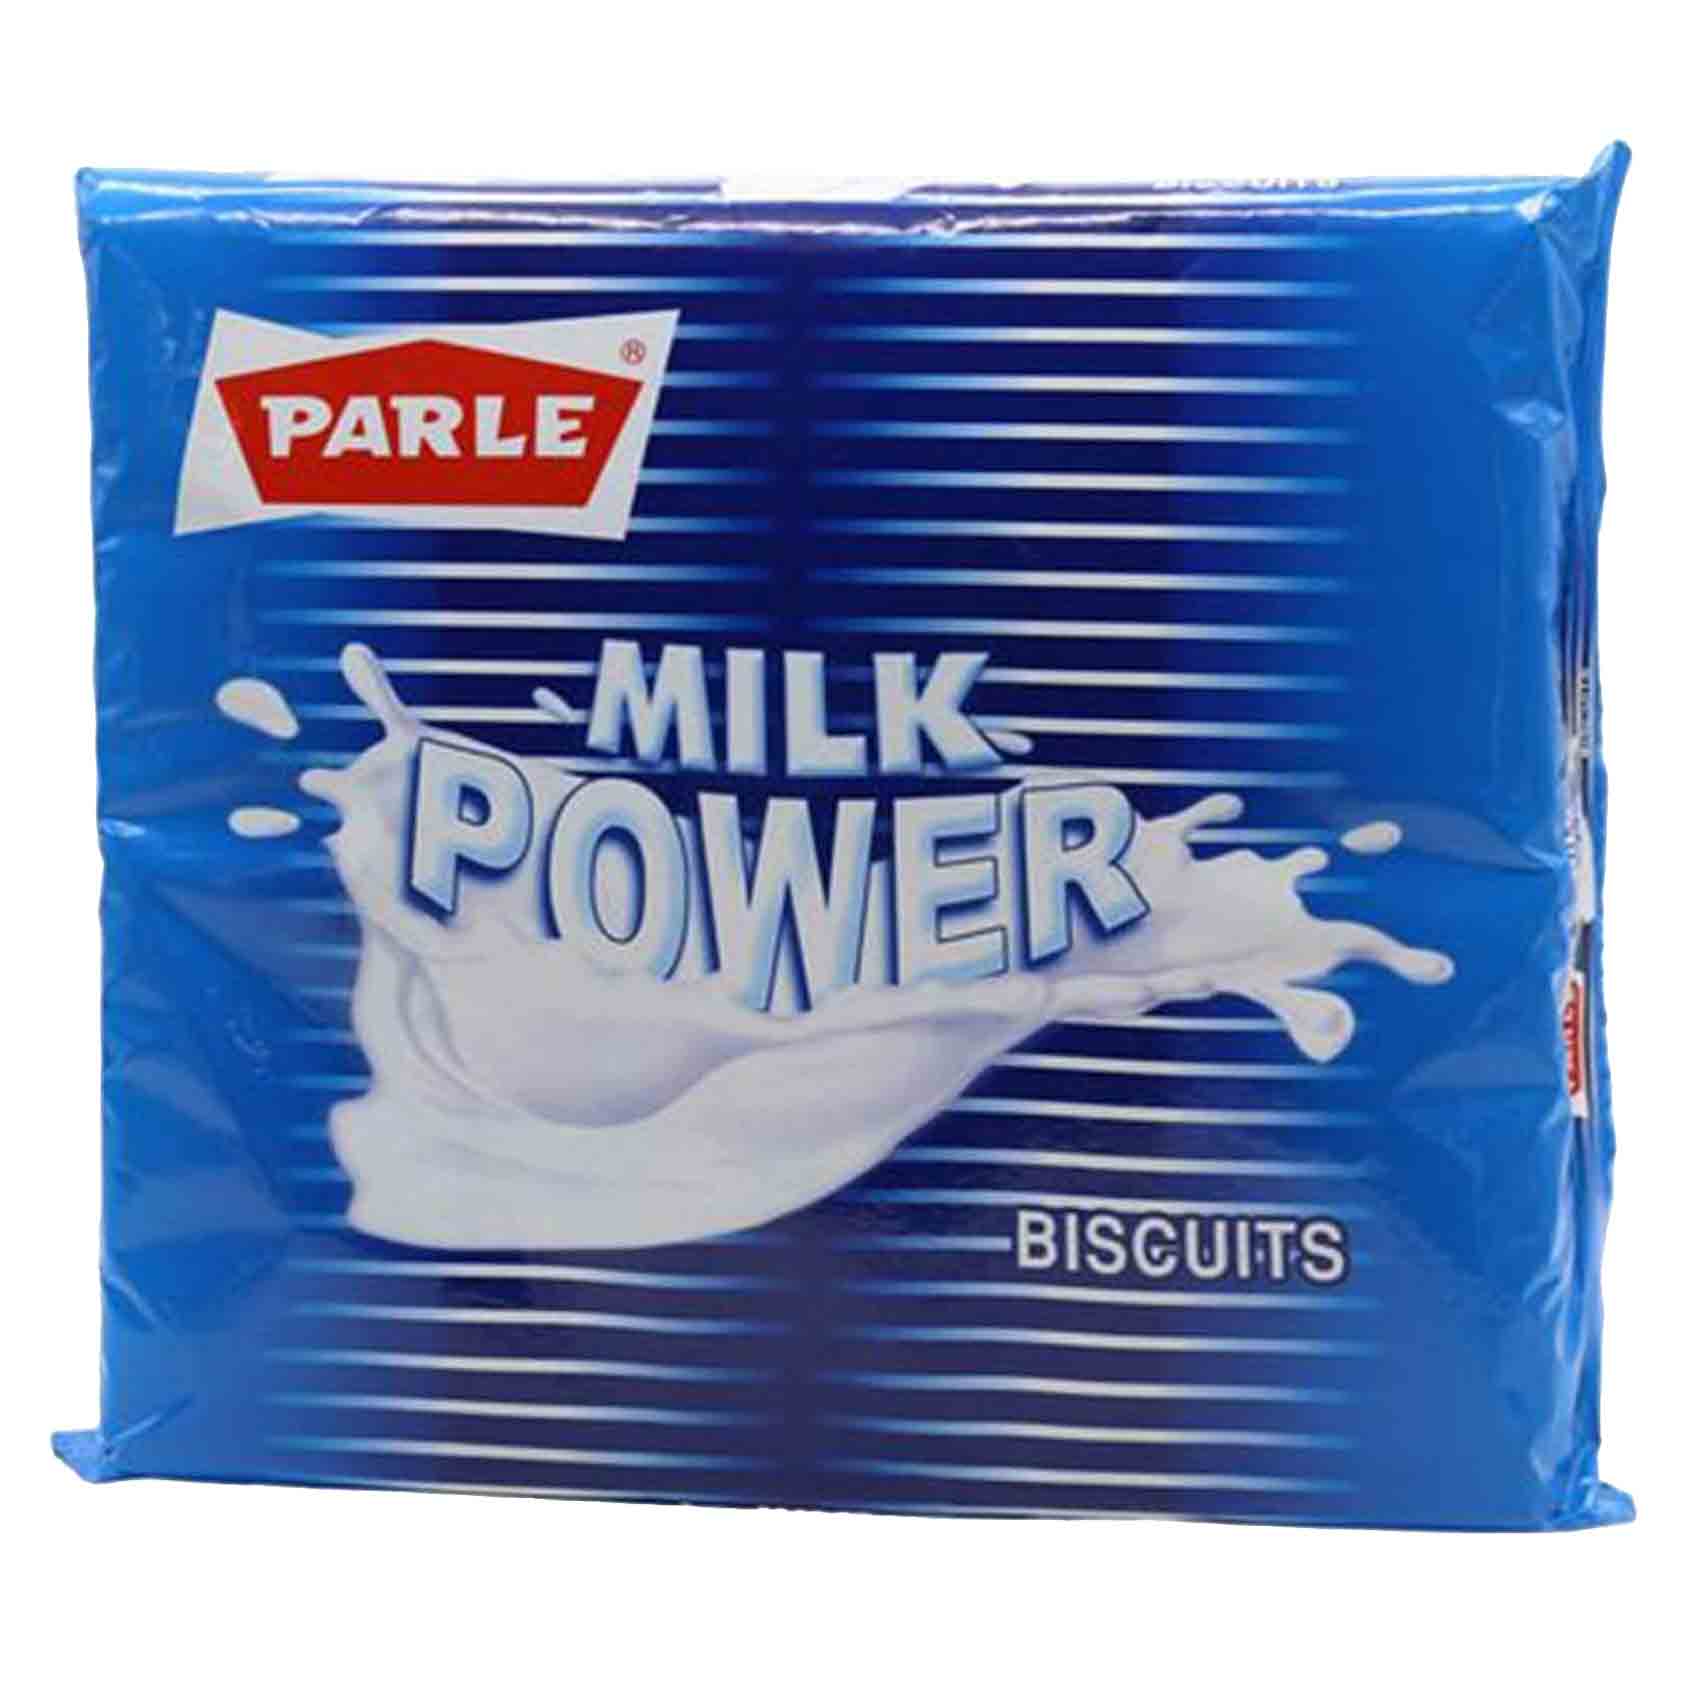 Parle Milk Power Biscuits 765g